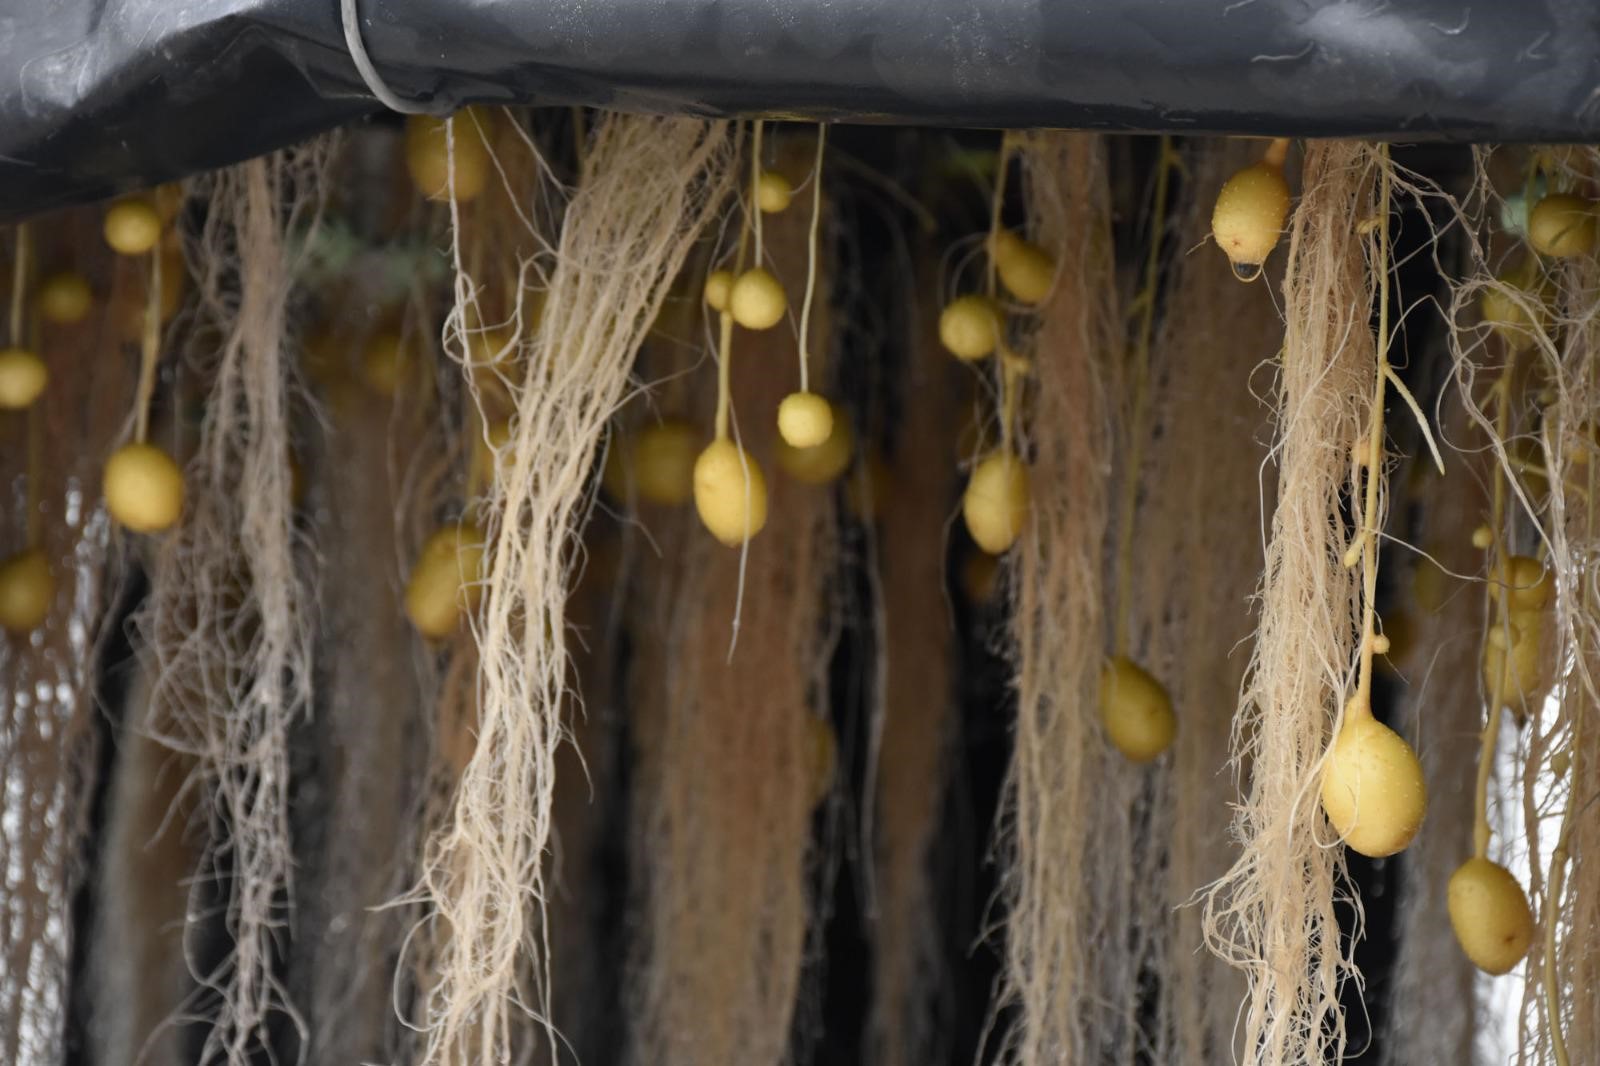 Yerli ve milli patatesler topraksız ortamda üretiliyor